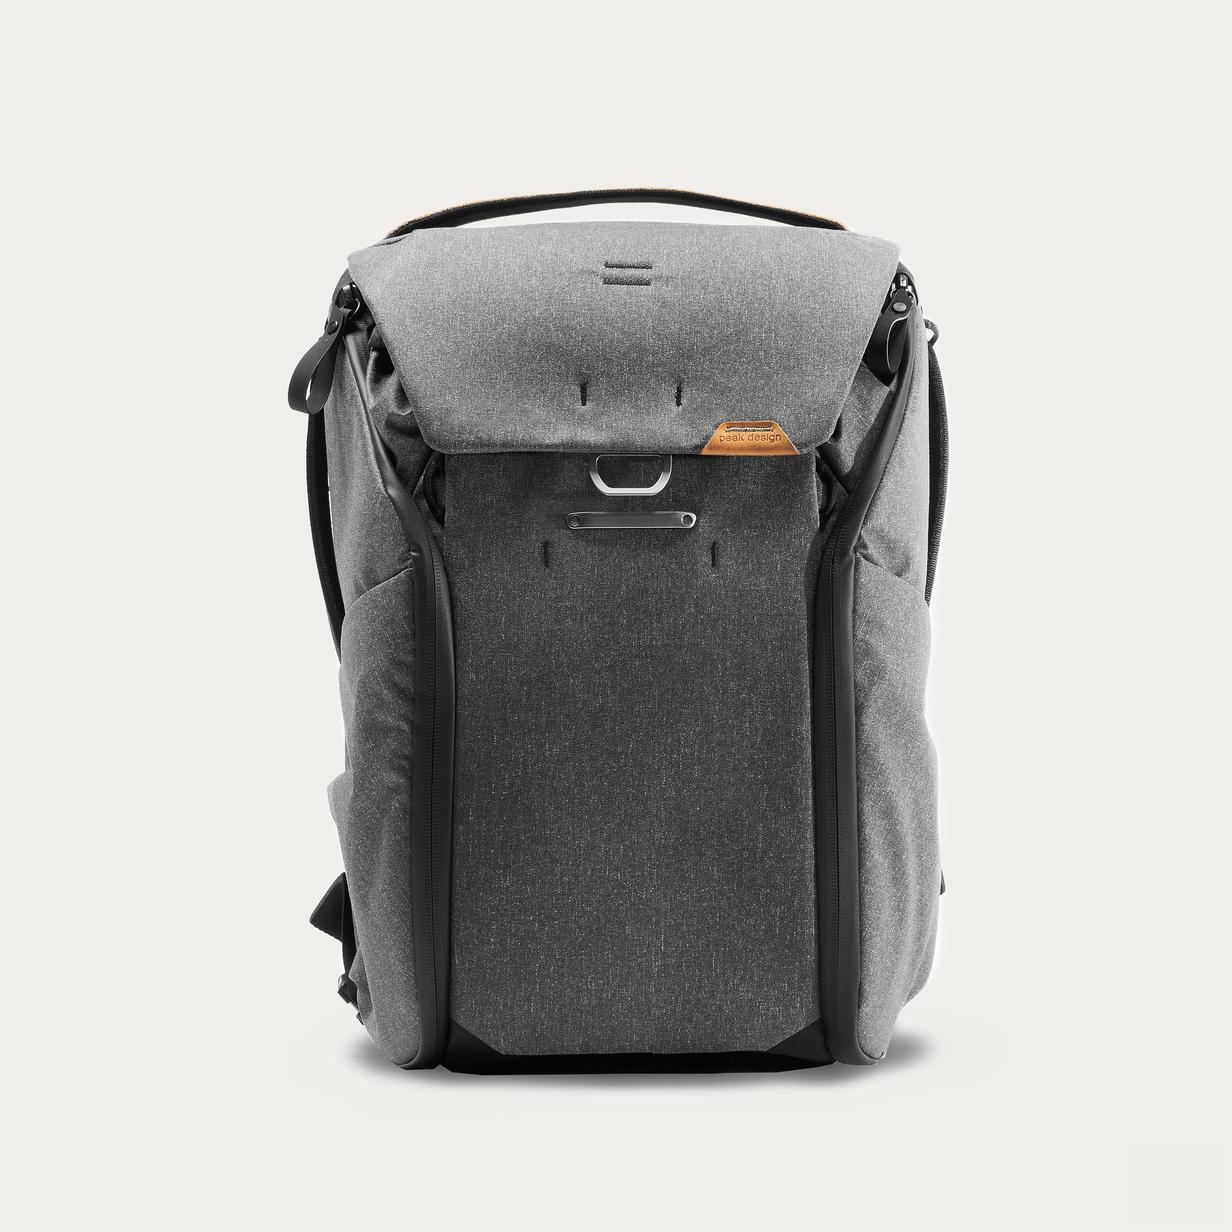 Peak Design Everyday Camera Backpack 20L Charcoal V2 02